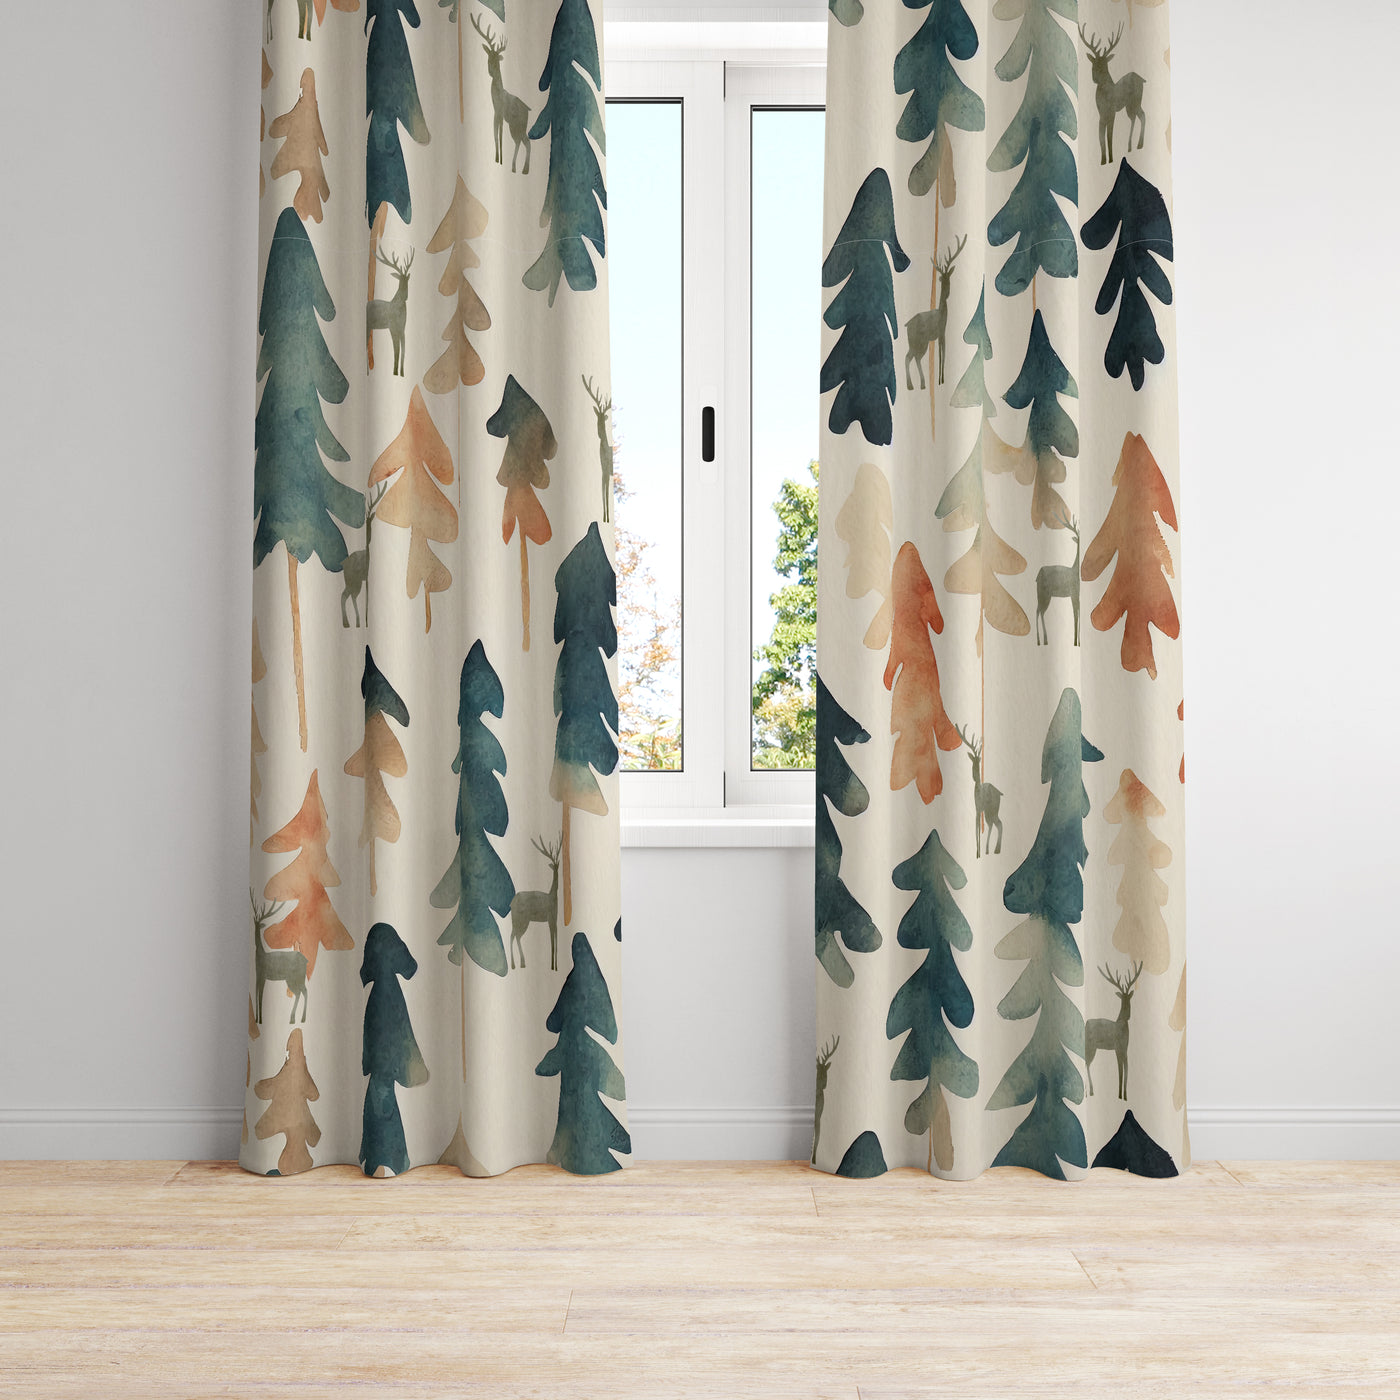 Rustic Lodge Window Curtains Trees And Deer Folk N Funky